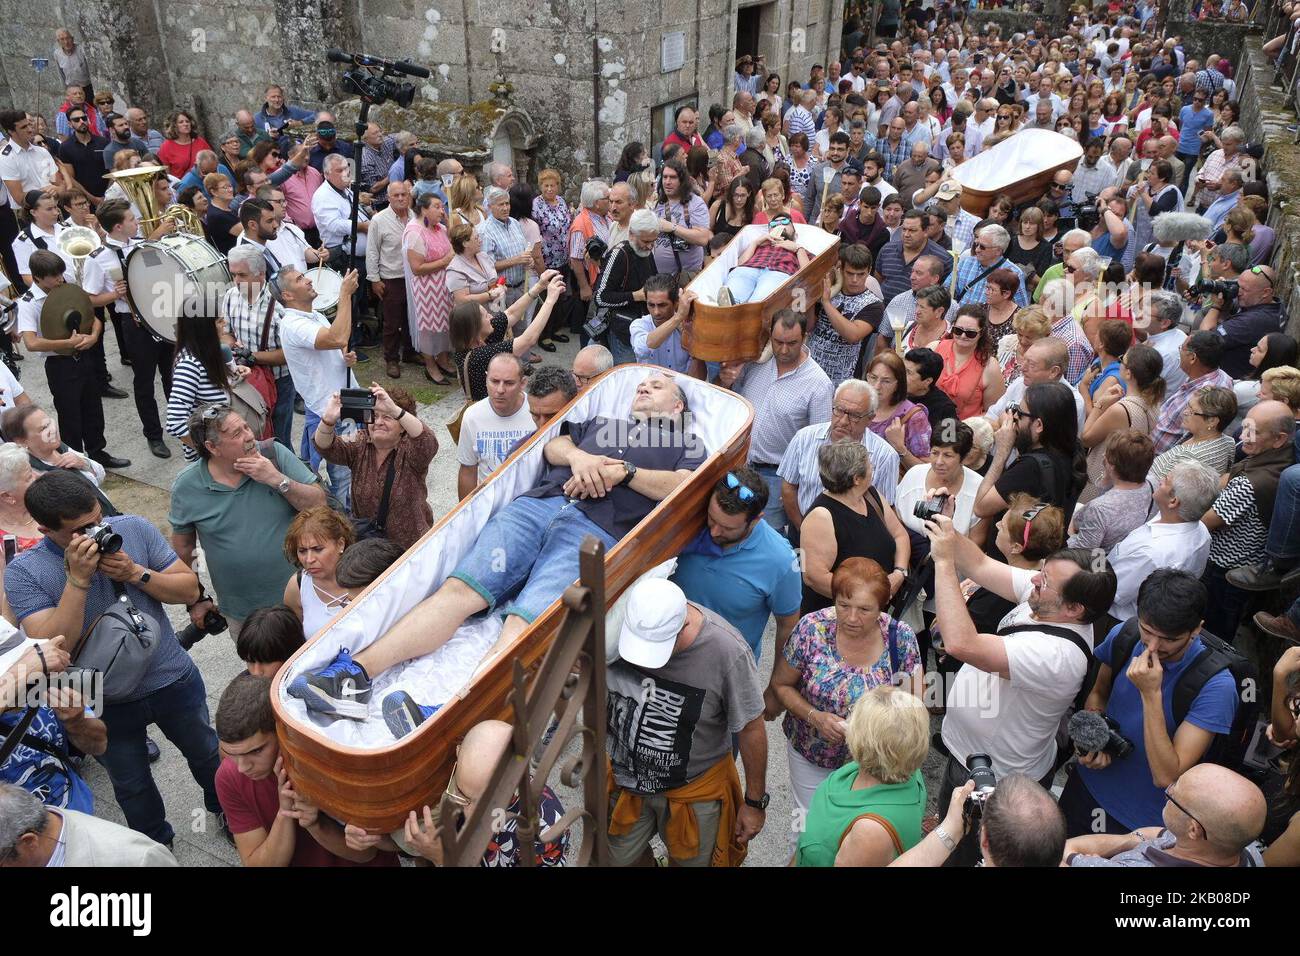 Les gens prennent part à , la procession des cercueils, le jour de Santa Marta, en Galice, au nord de l'Espagne, sur 29 juillet 2018. Trois personnes ont laissé à l'intérieur des cercueils et six boîtes vides offertes à la Vierge par autant de pénitents. La première nouvelle de ce pèlerinage est de 1700, mais le curé assure qu'il remonte à l'âge moyen. Depuis, cette région d'AS Neves célèbre une tradition qui attire des milliers de pèlerins (photo d'Alvaro Fuente/NurPhoto) Banque D'Images